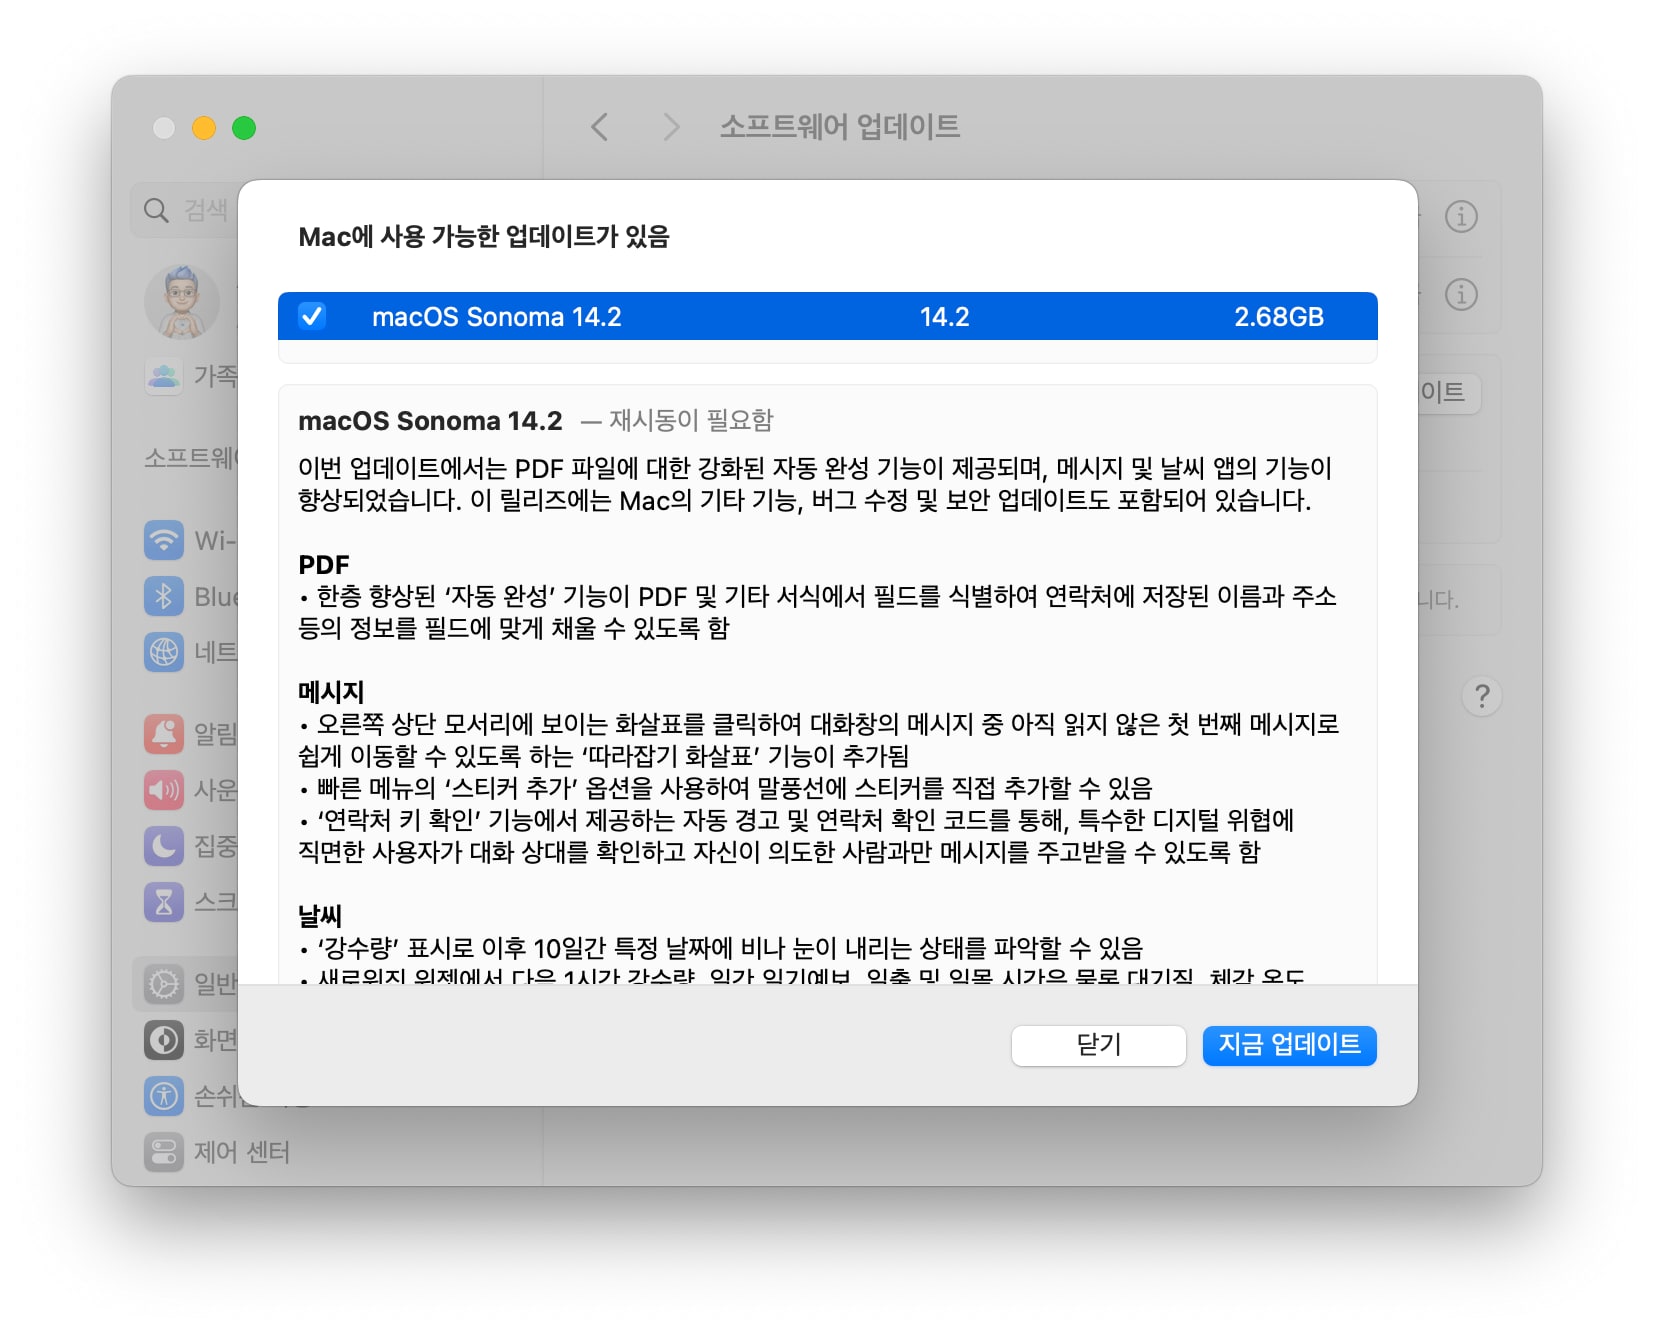 맥OS 소노마 14.2 업데이트 파일 용량 및 내용